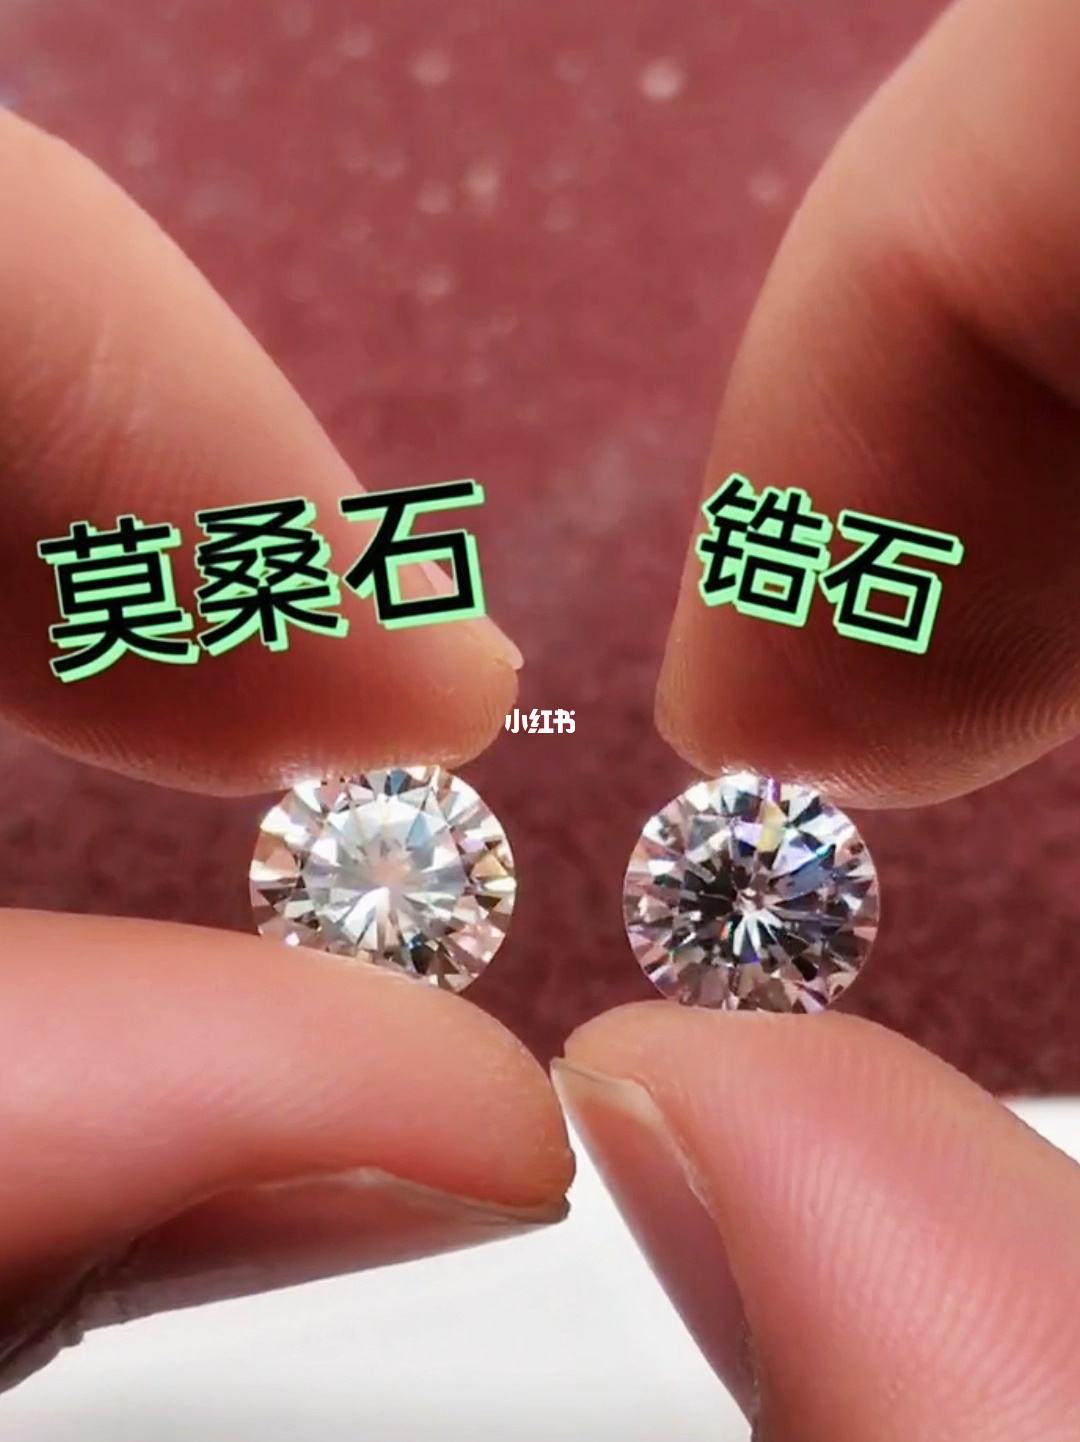 怎么样区分莫桑钻和钻石的区别,莫桑钻和钻石好区分吗-第1张图片-翡翠网